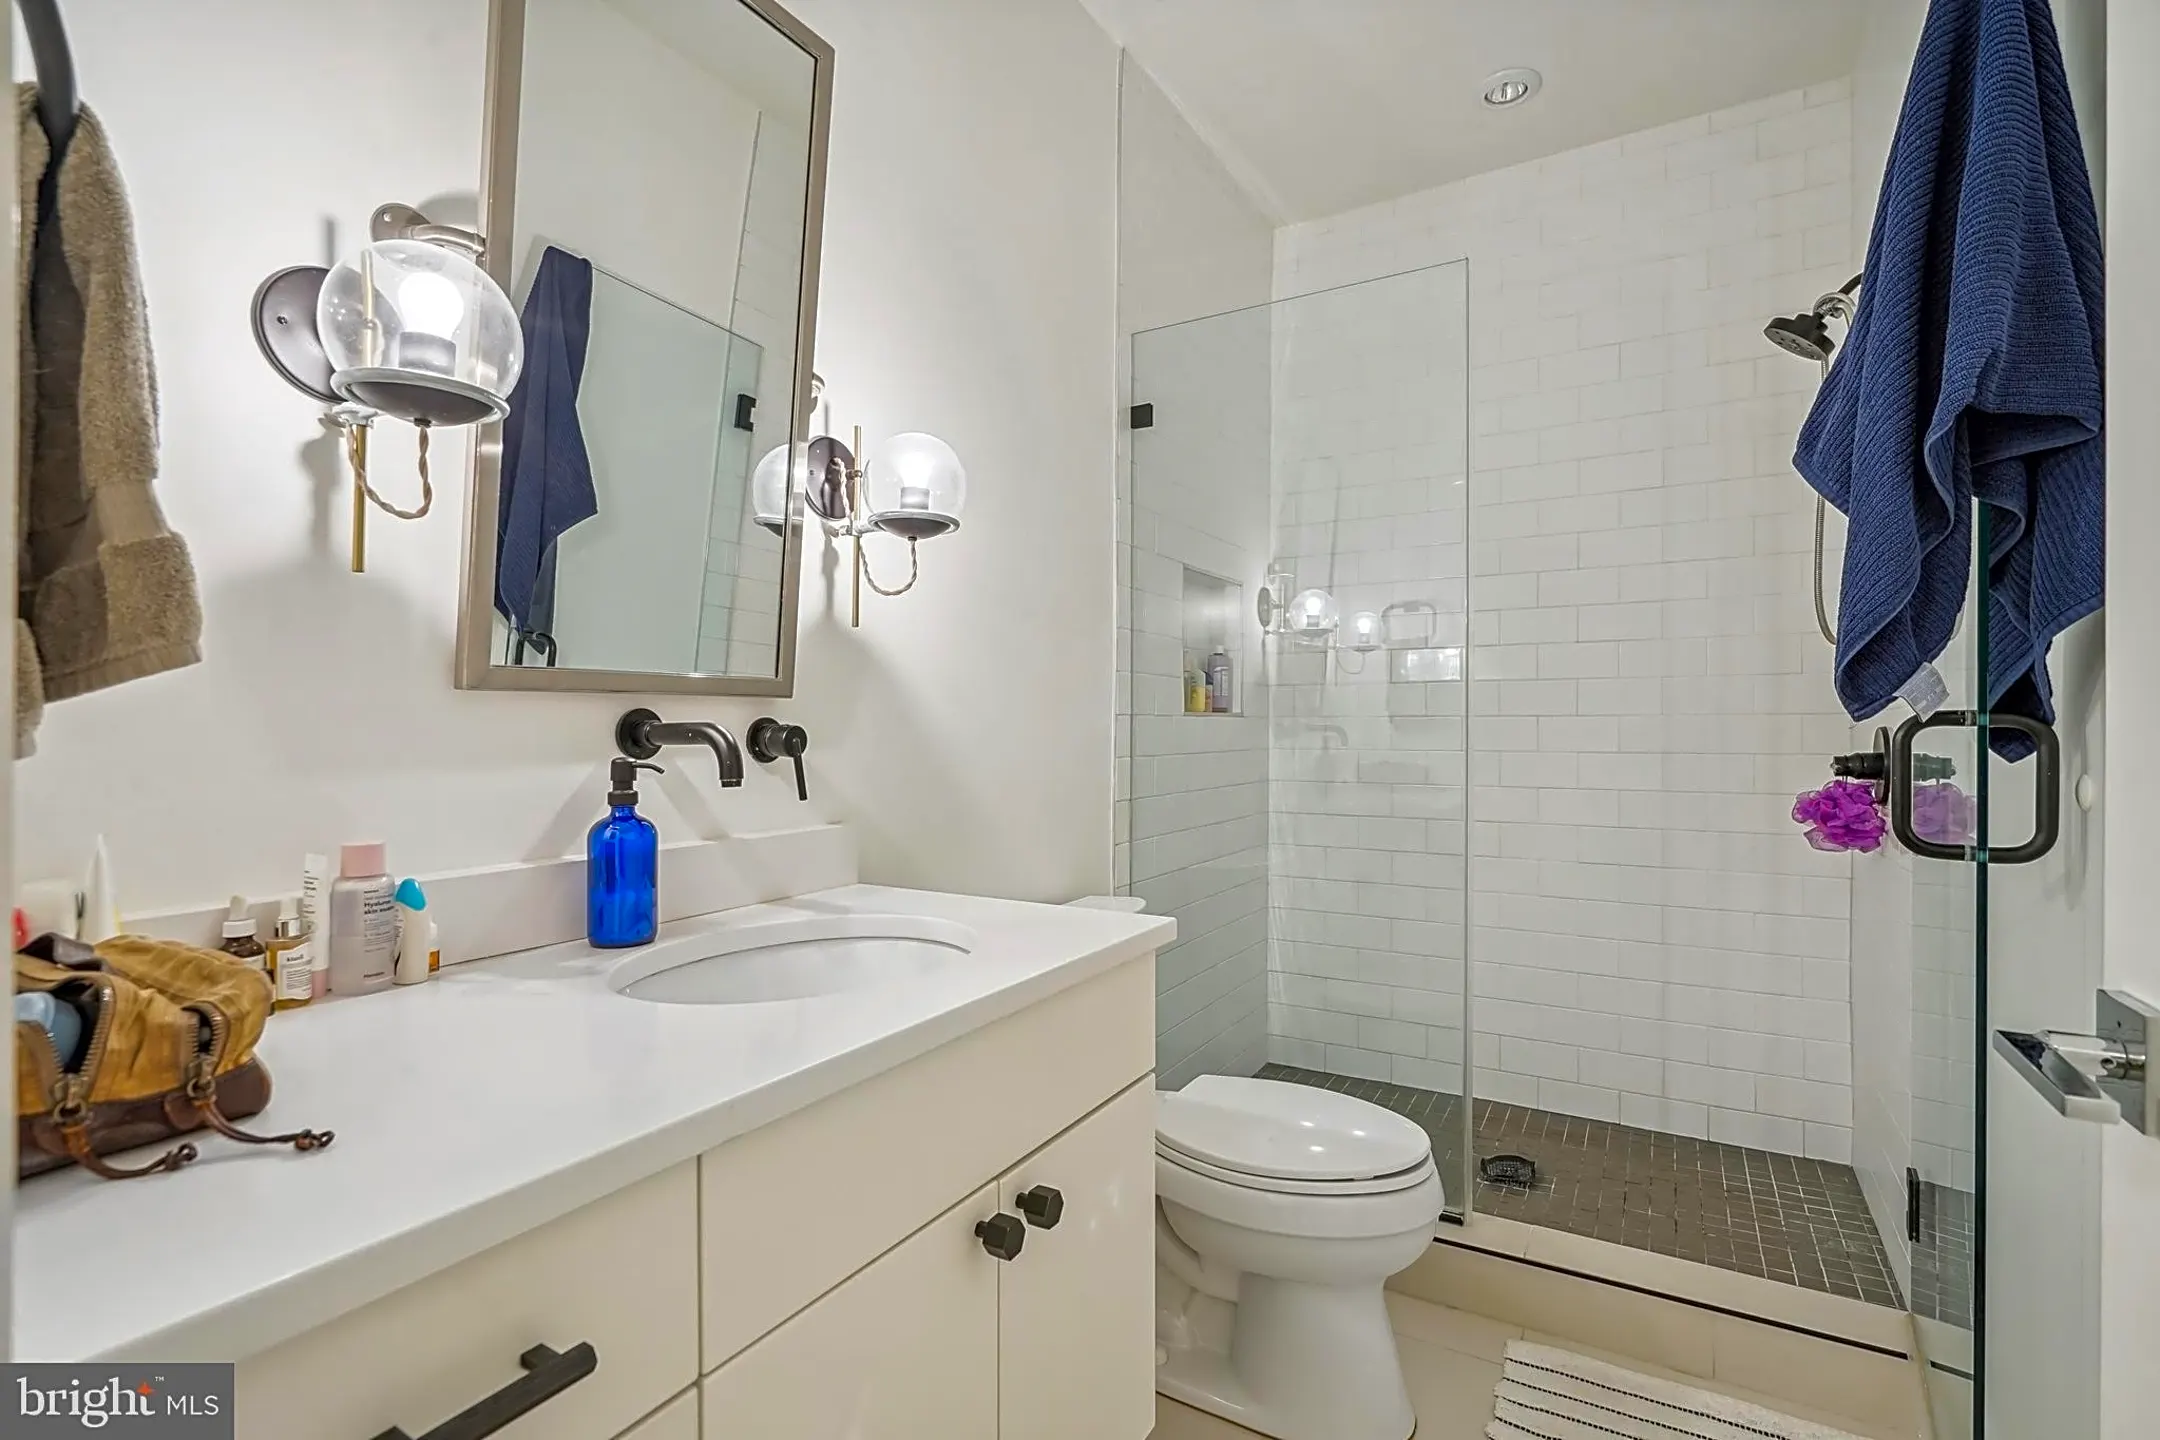 Bathroom - 1415 Oak St NW #T01 - Washington, DC